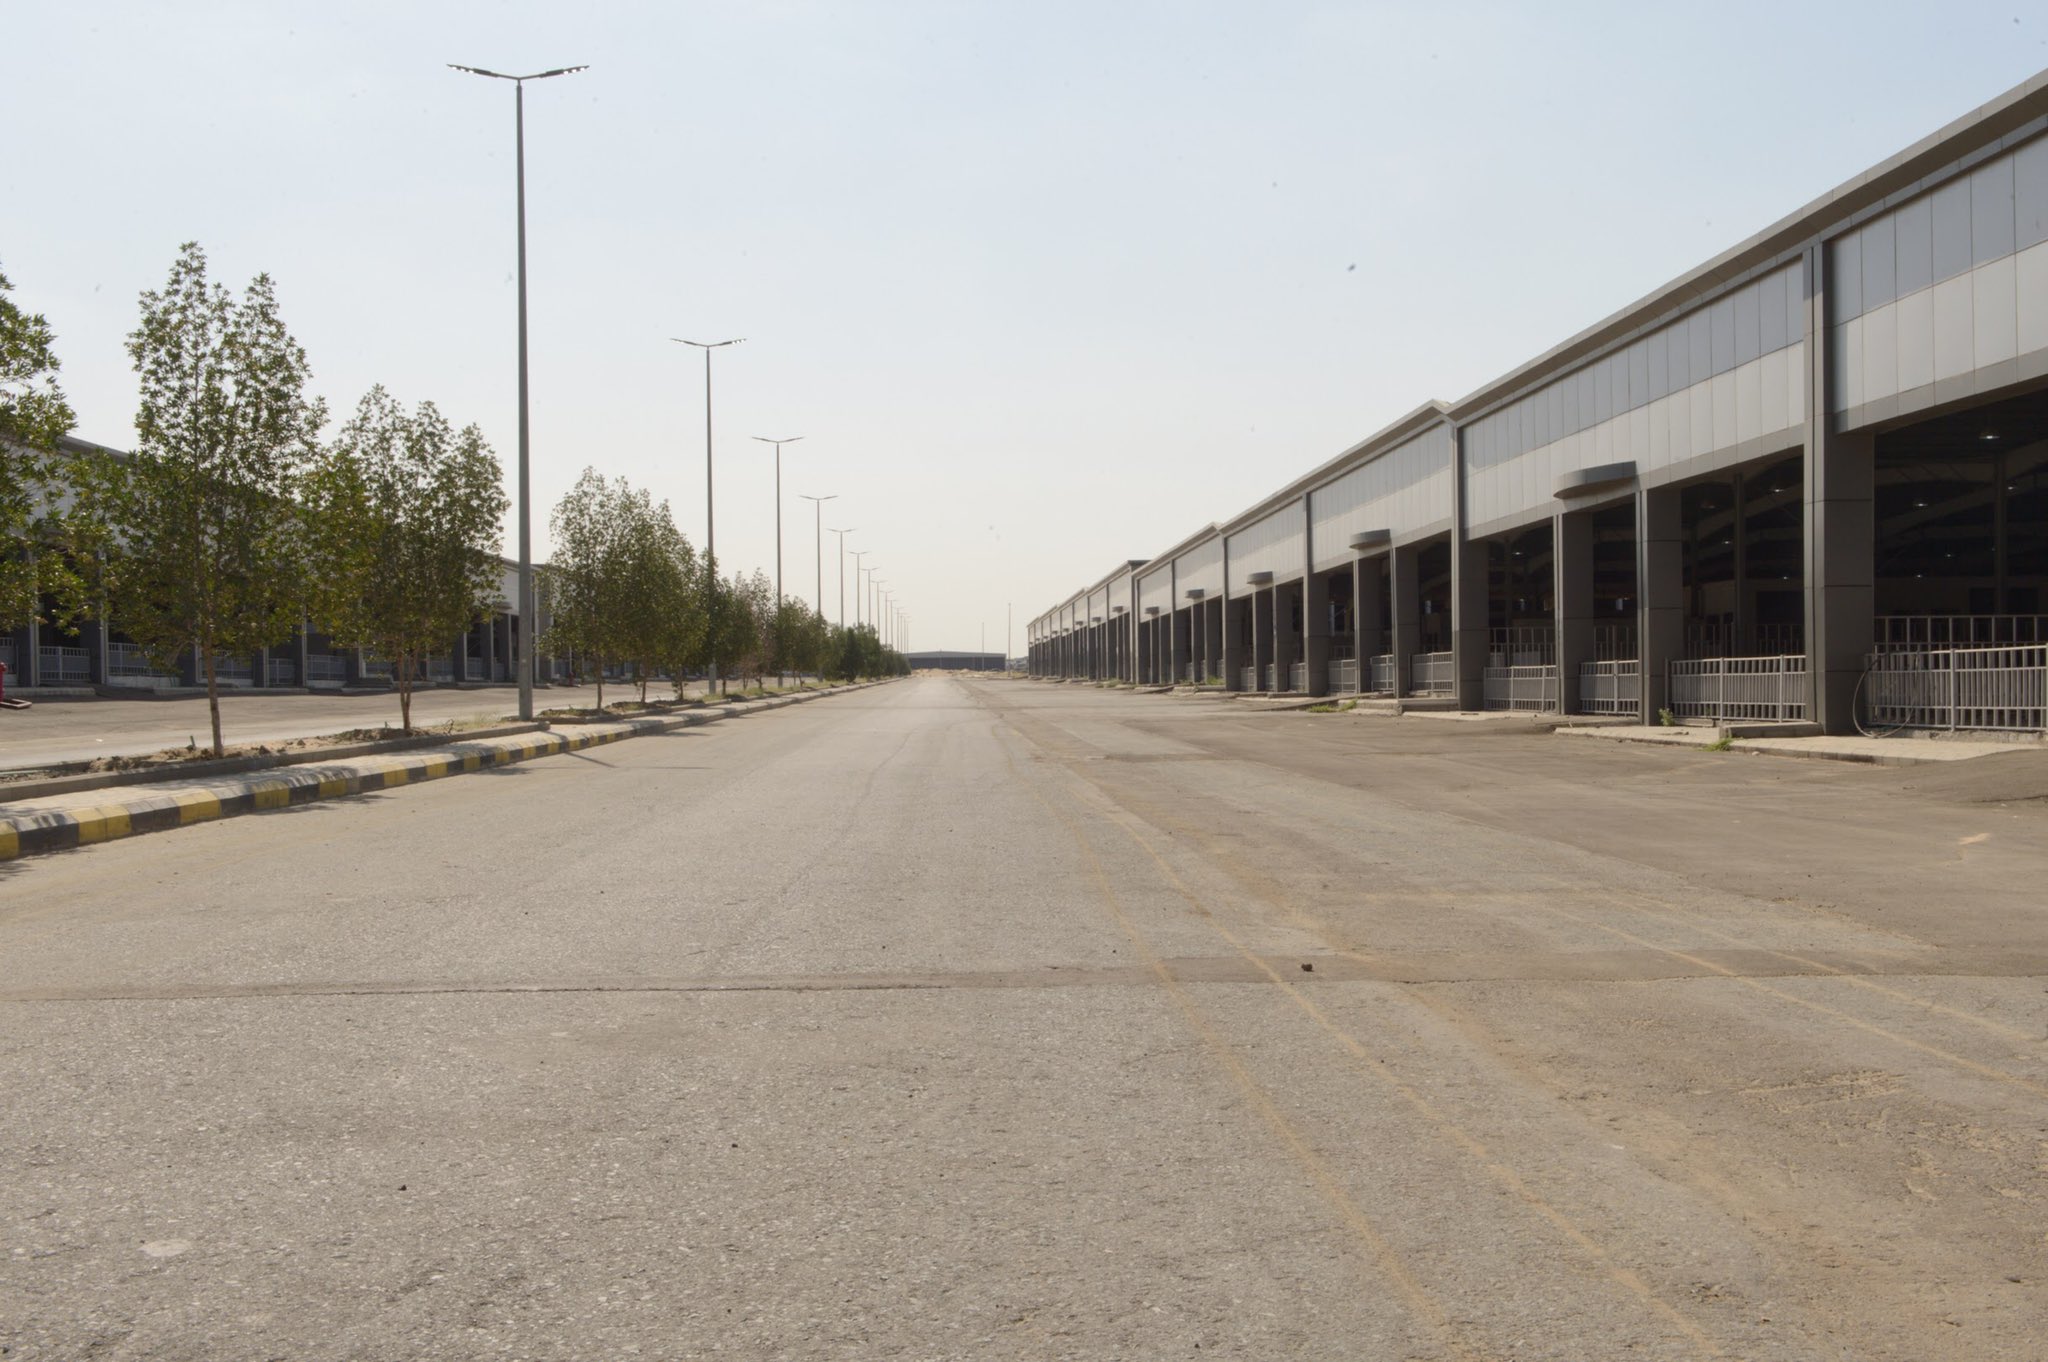 "بالصور" افتتاح مدينة السيارات الأكبر بالمنطقة في عكيشية مكة 19